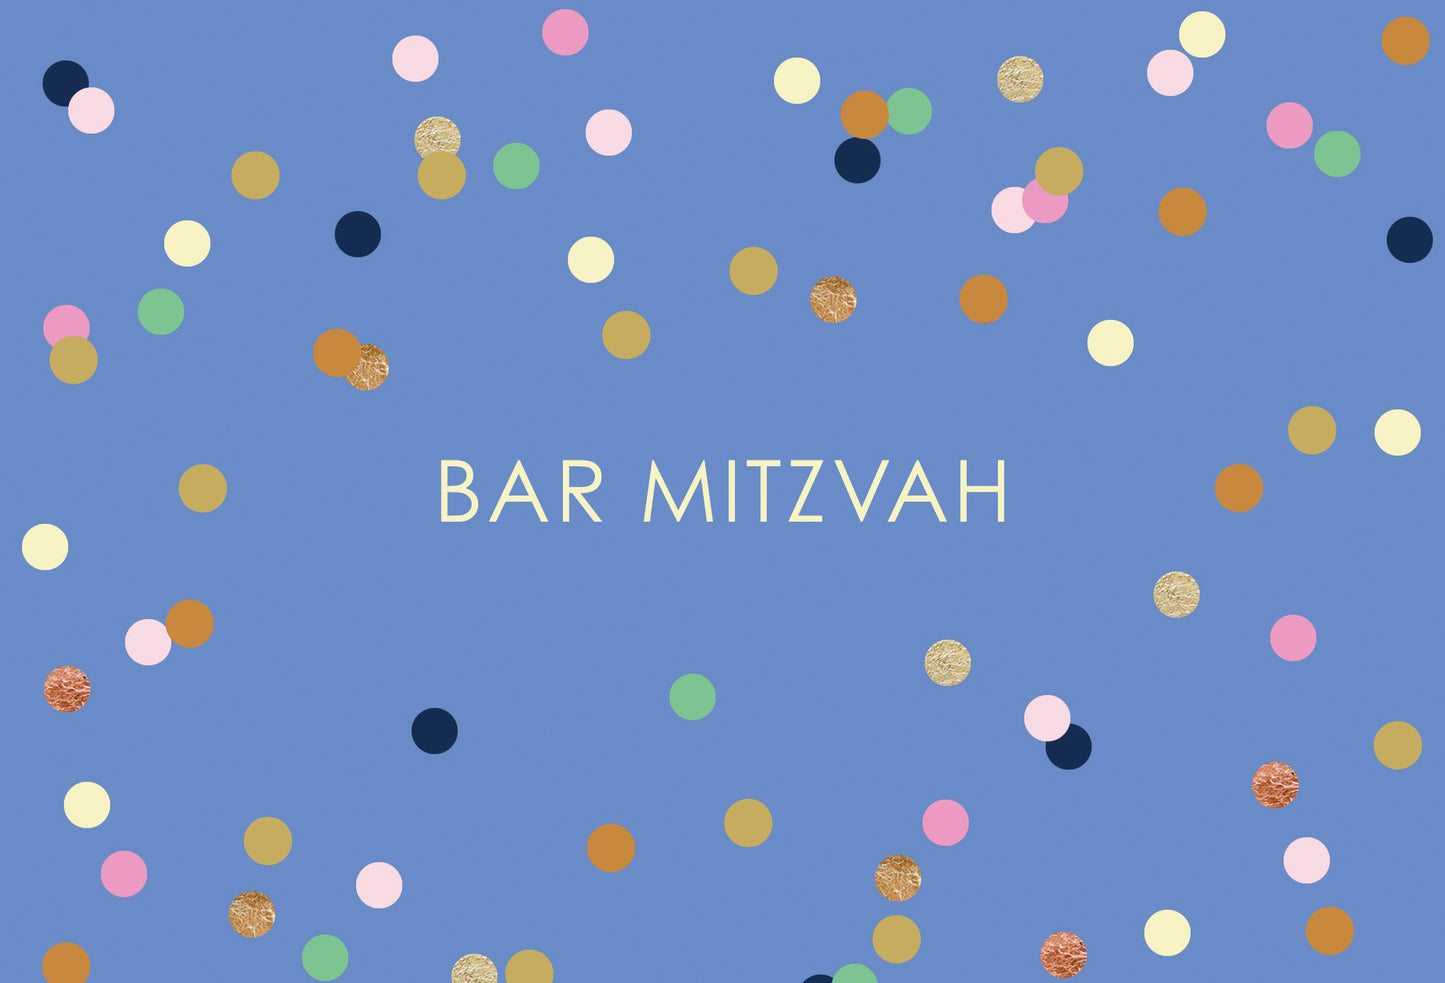 Bar Mitzvah Card Bar Mitzvah - Cardmore